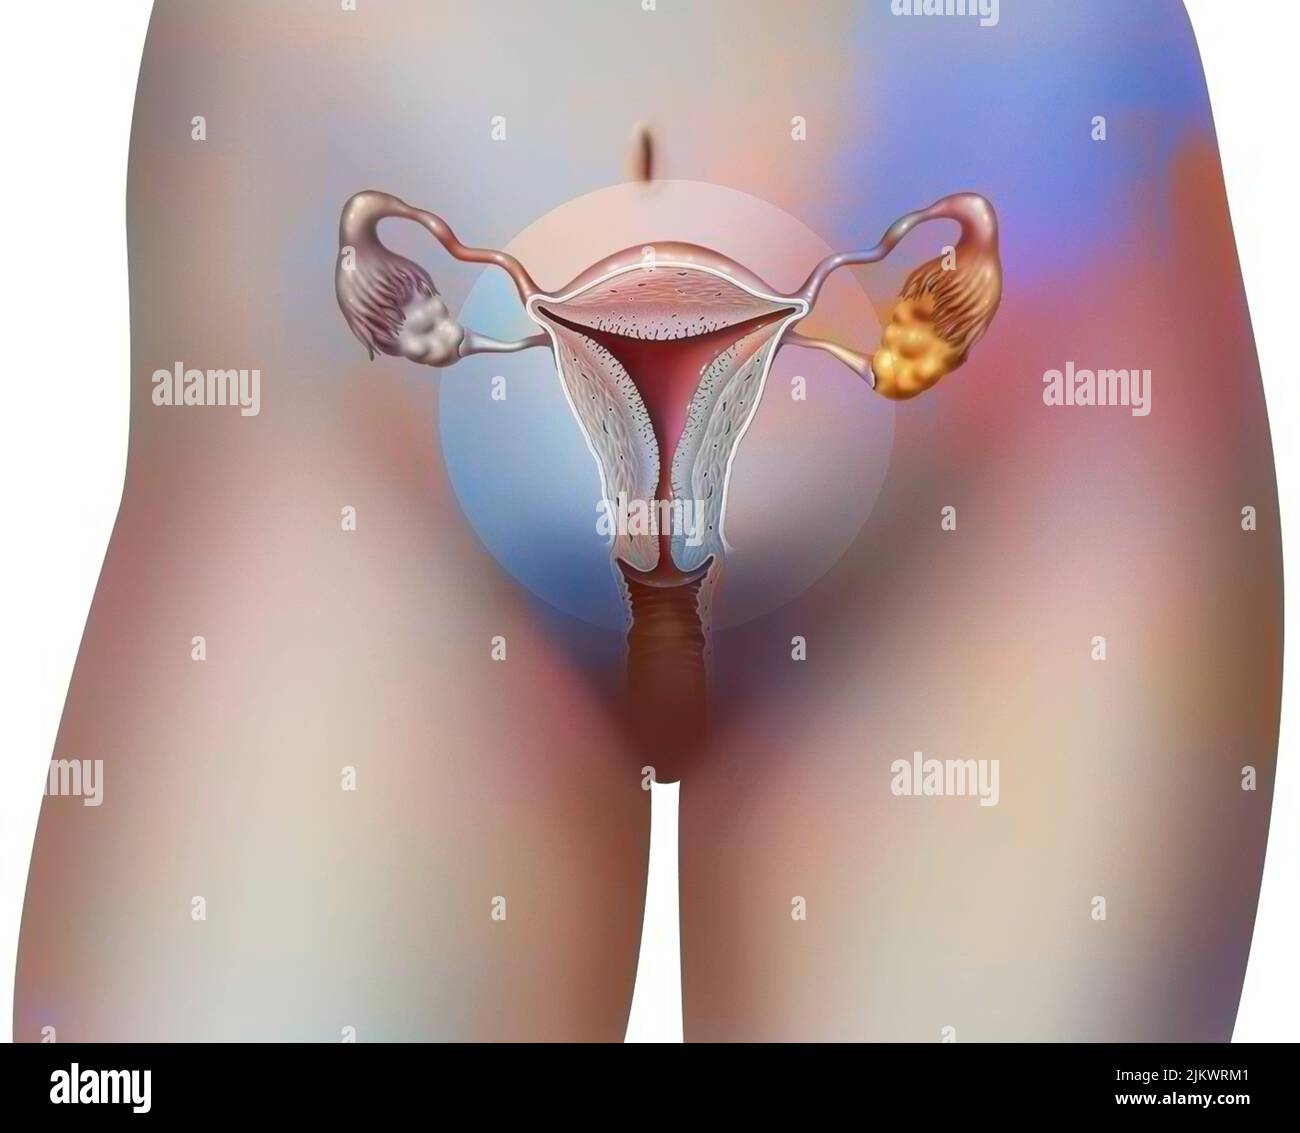 Vue antérieure des organes génitaux féminins avec vagin, utérus, trompes de Fallope, ovaires. Banque D'Images